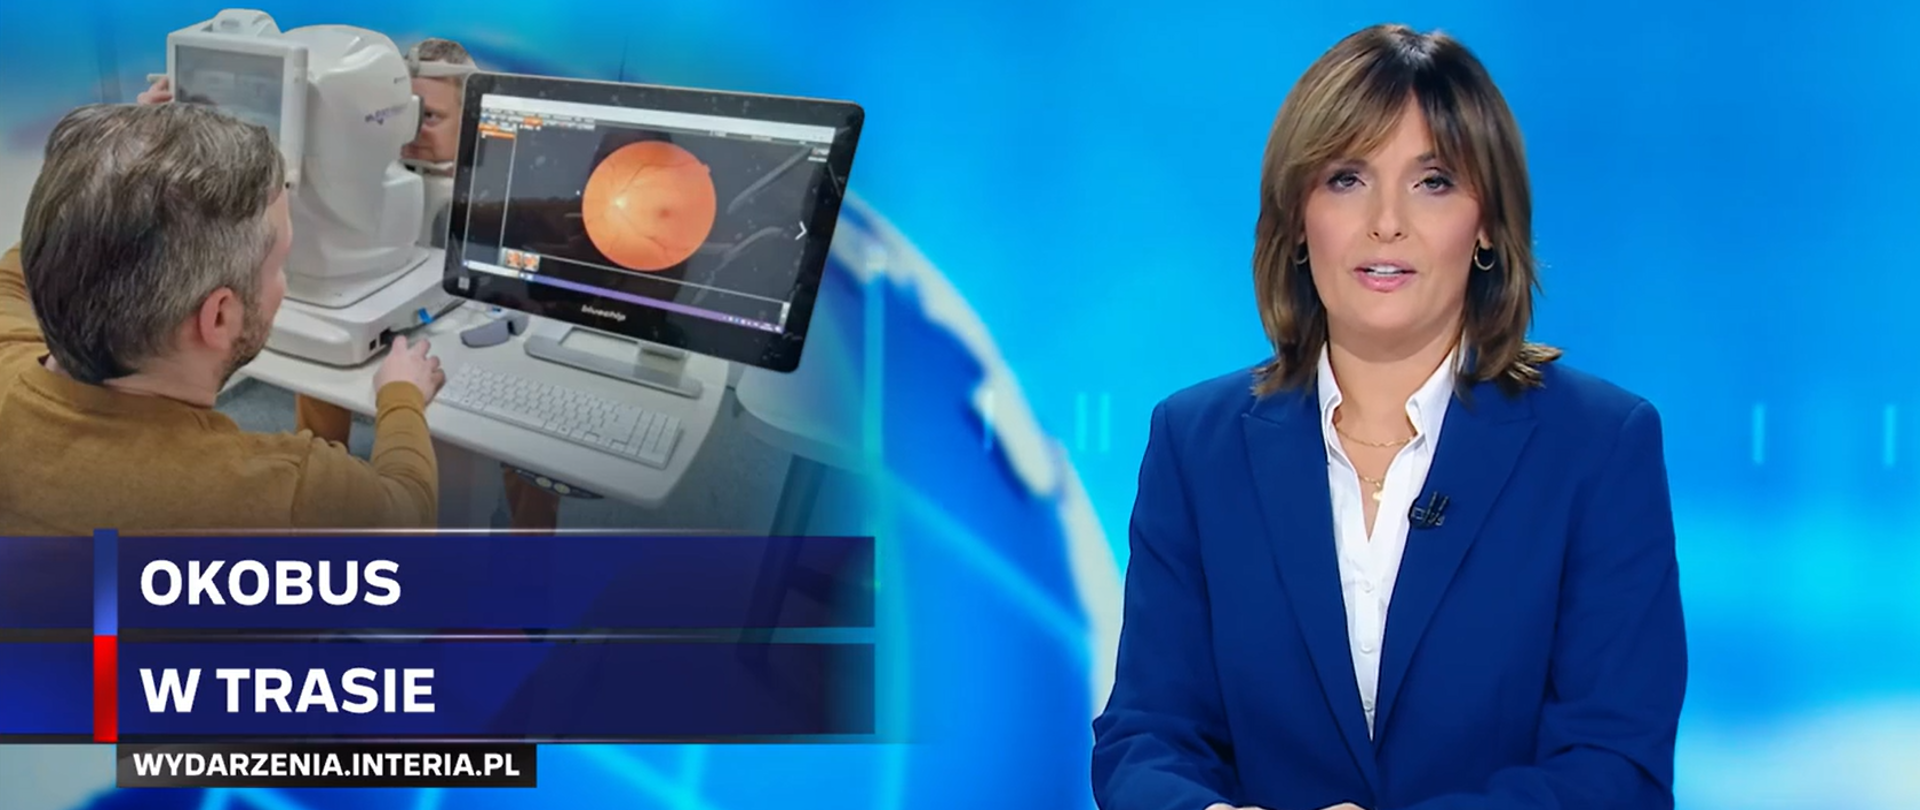 Klatka z materiału telewizji Polsat News na temat Okobusa. Widoczna prezenterka i napis: Okobus w trasie.